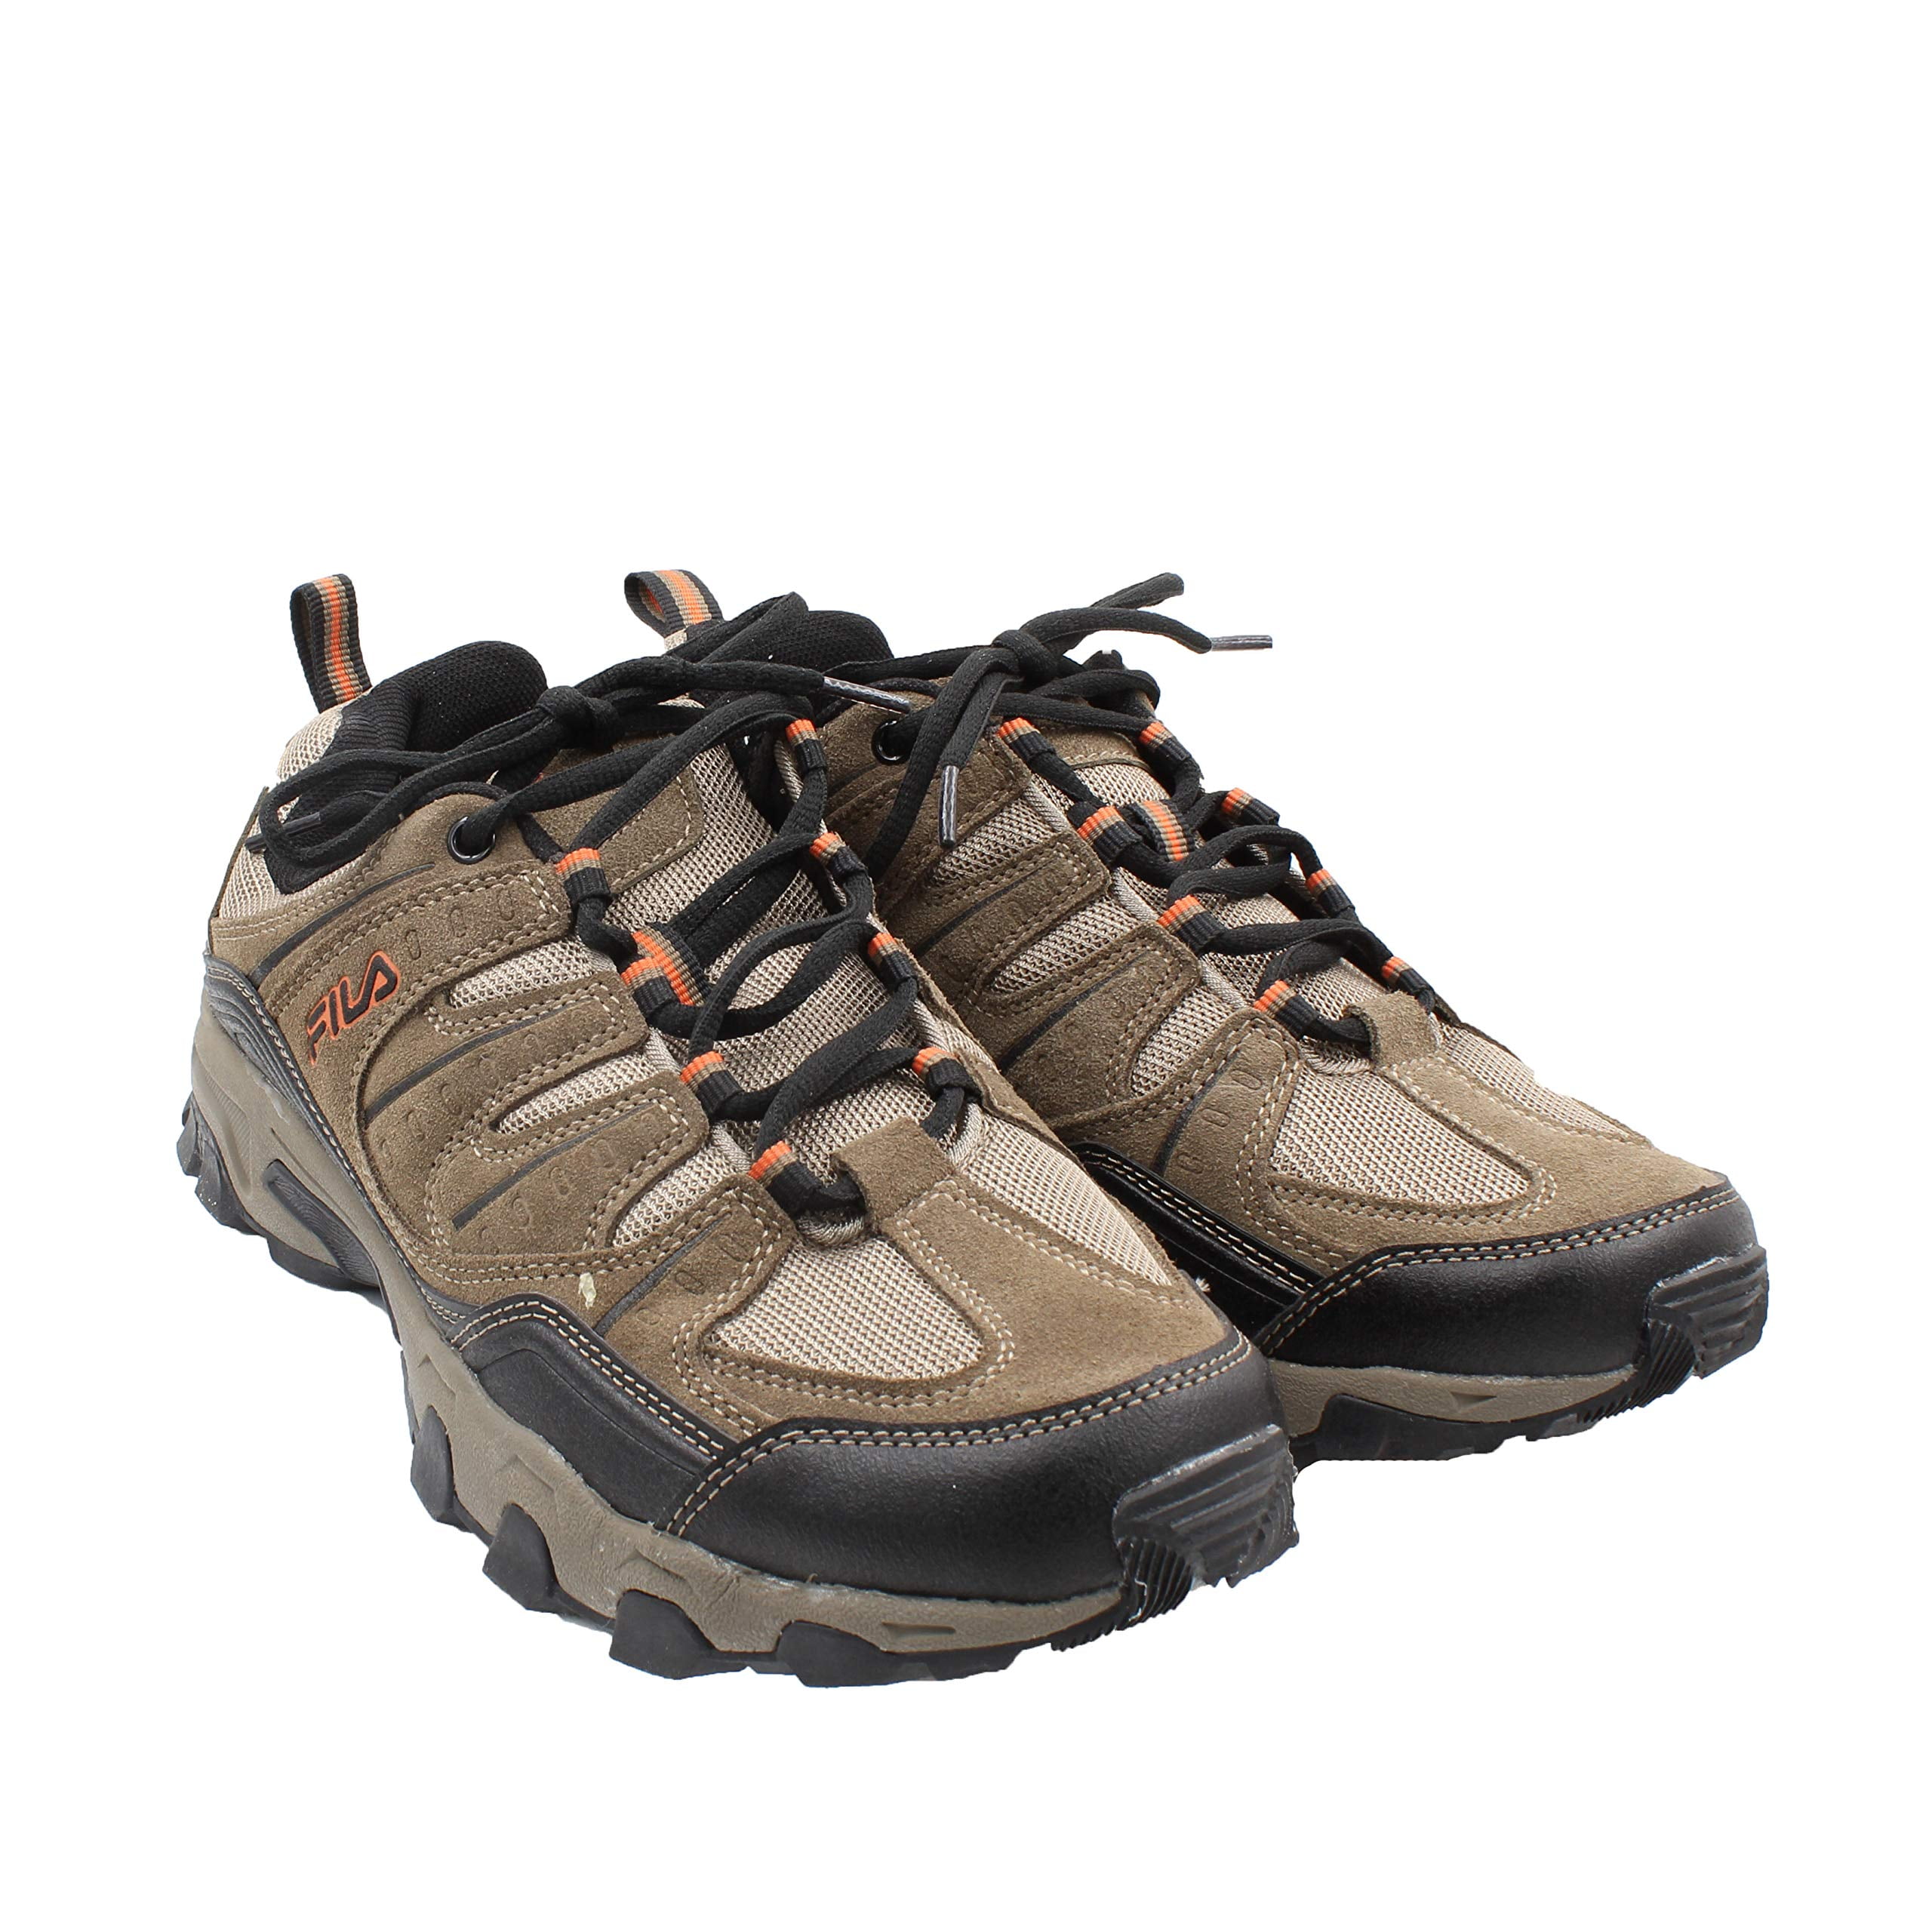 Afgeschaft Resoneer IJver Fila Men's Outdoor Midland Running Shoes (Brown/Orange, 11.5) - Walmart.com